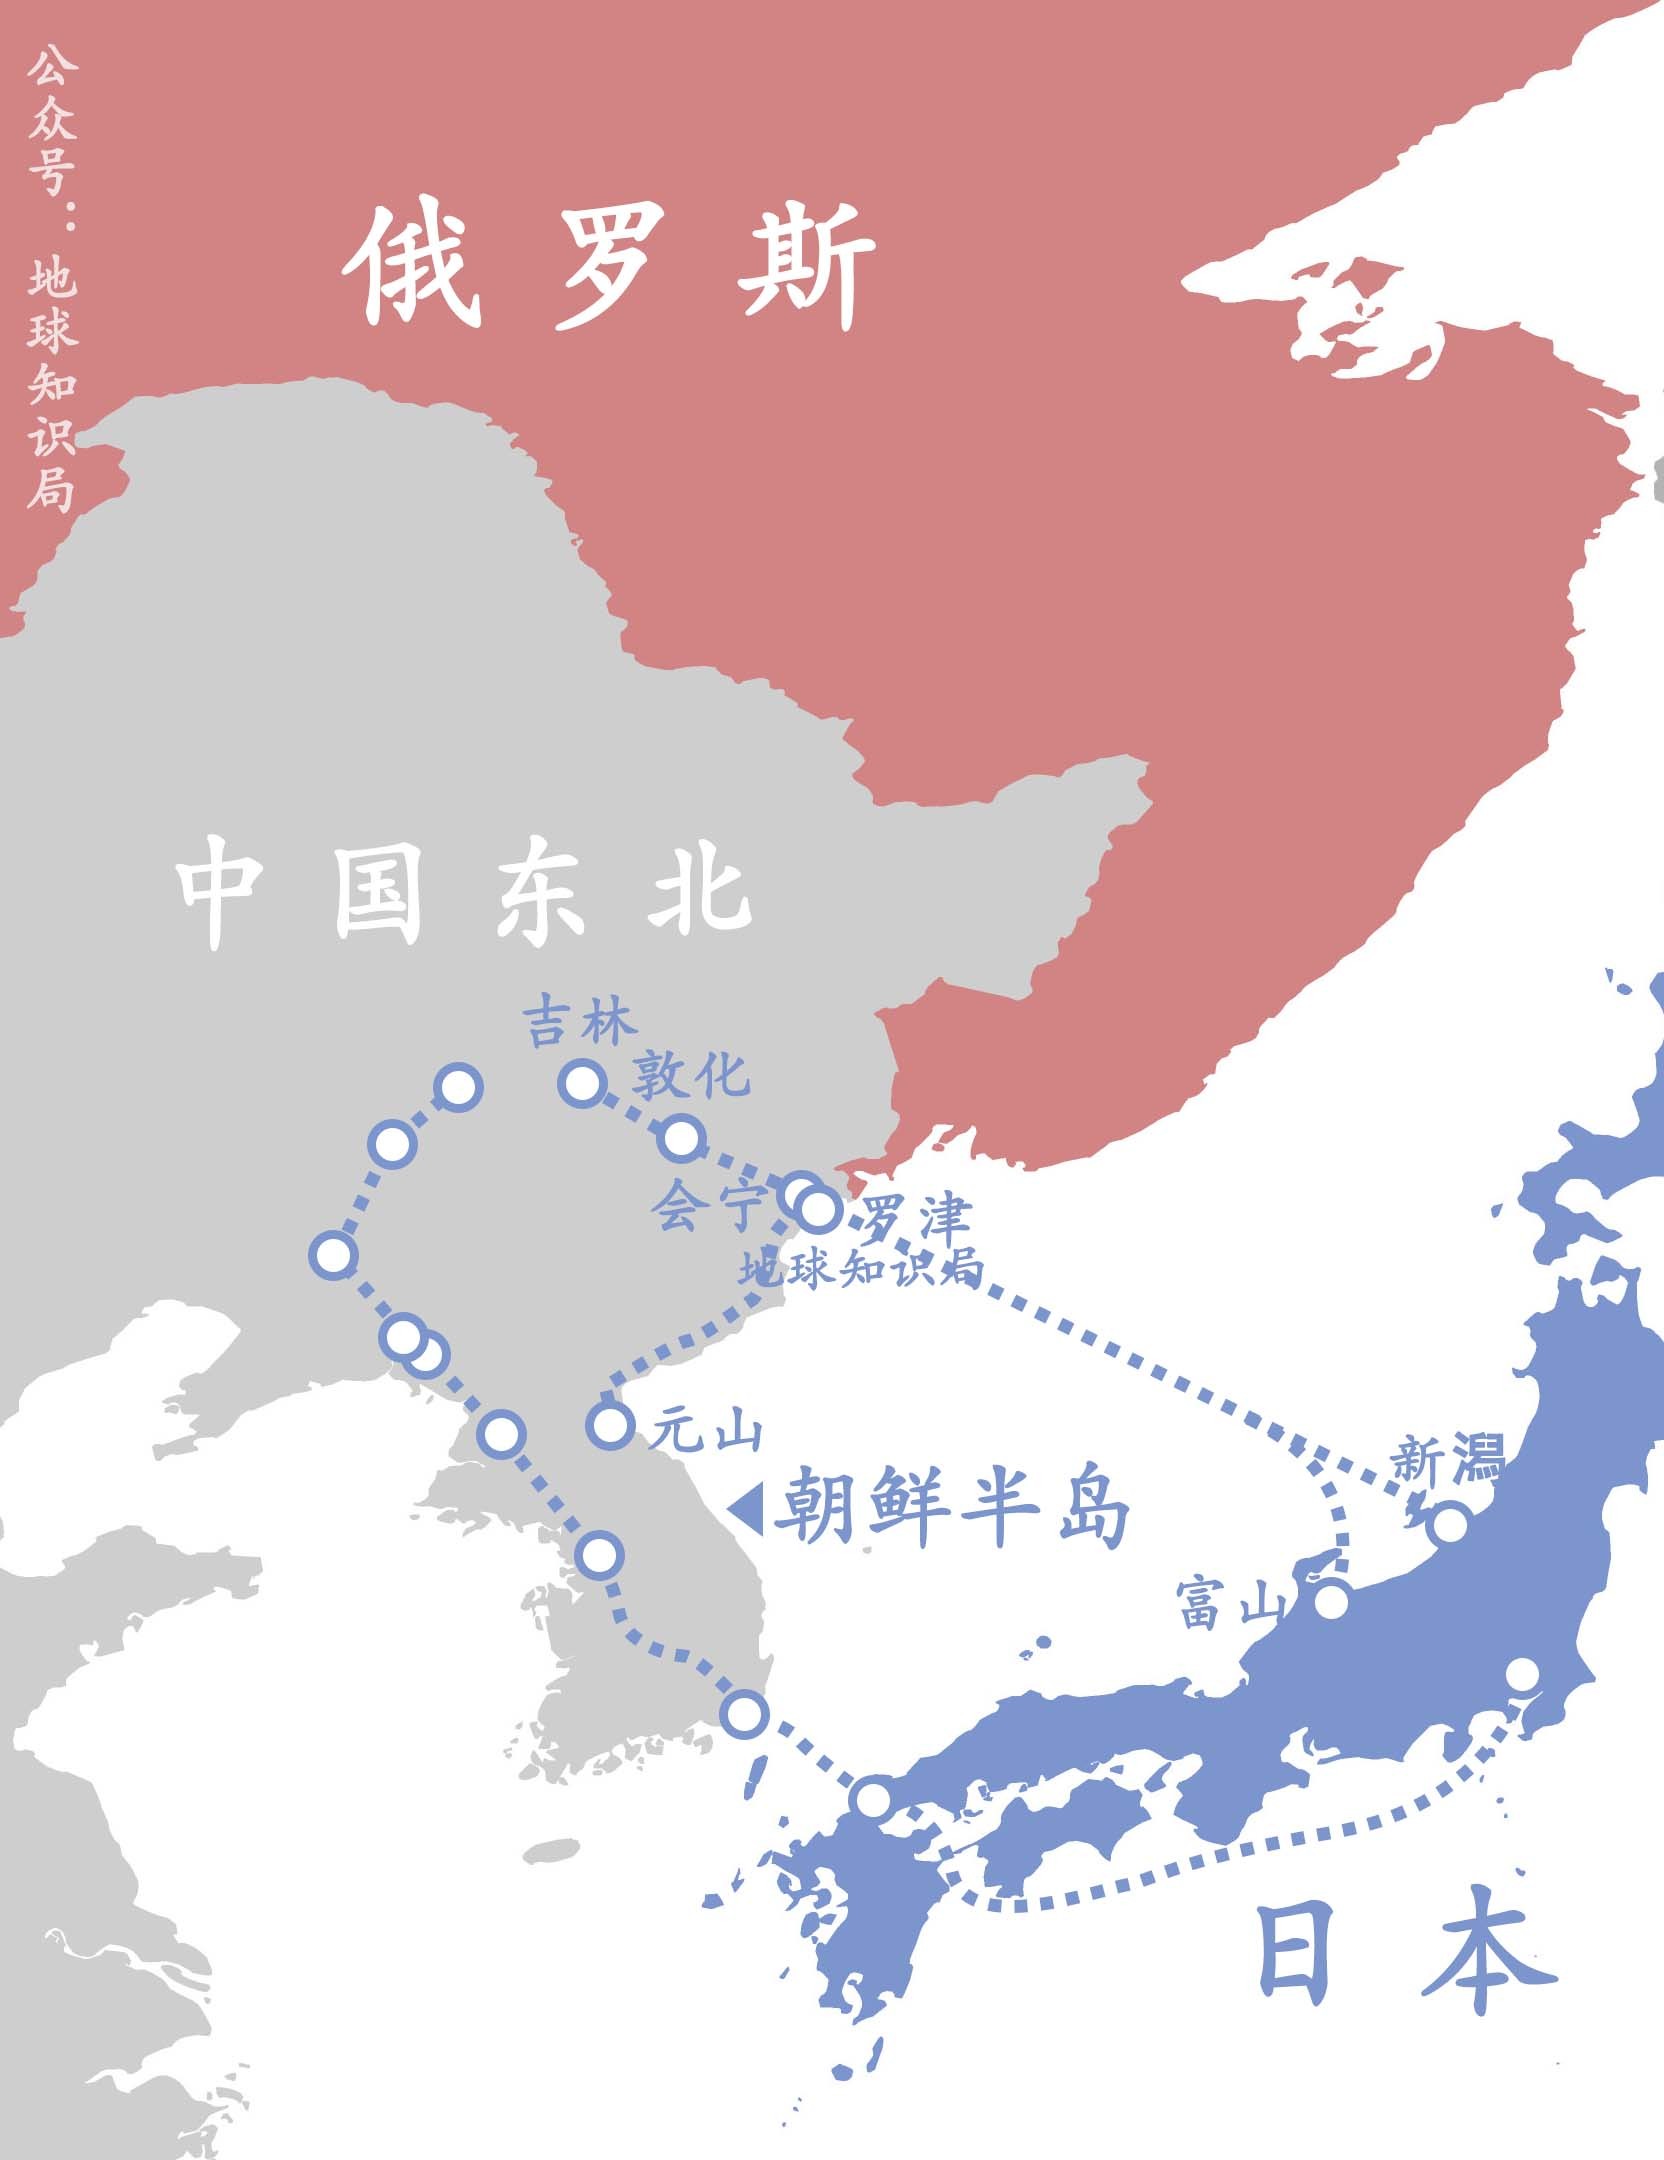 朝鲜地铁线路图图片